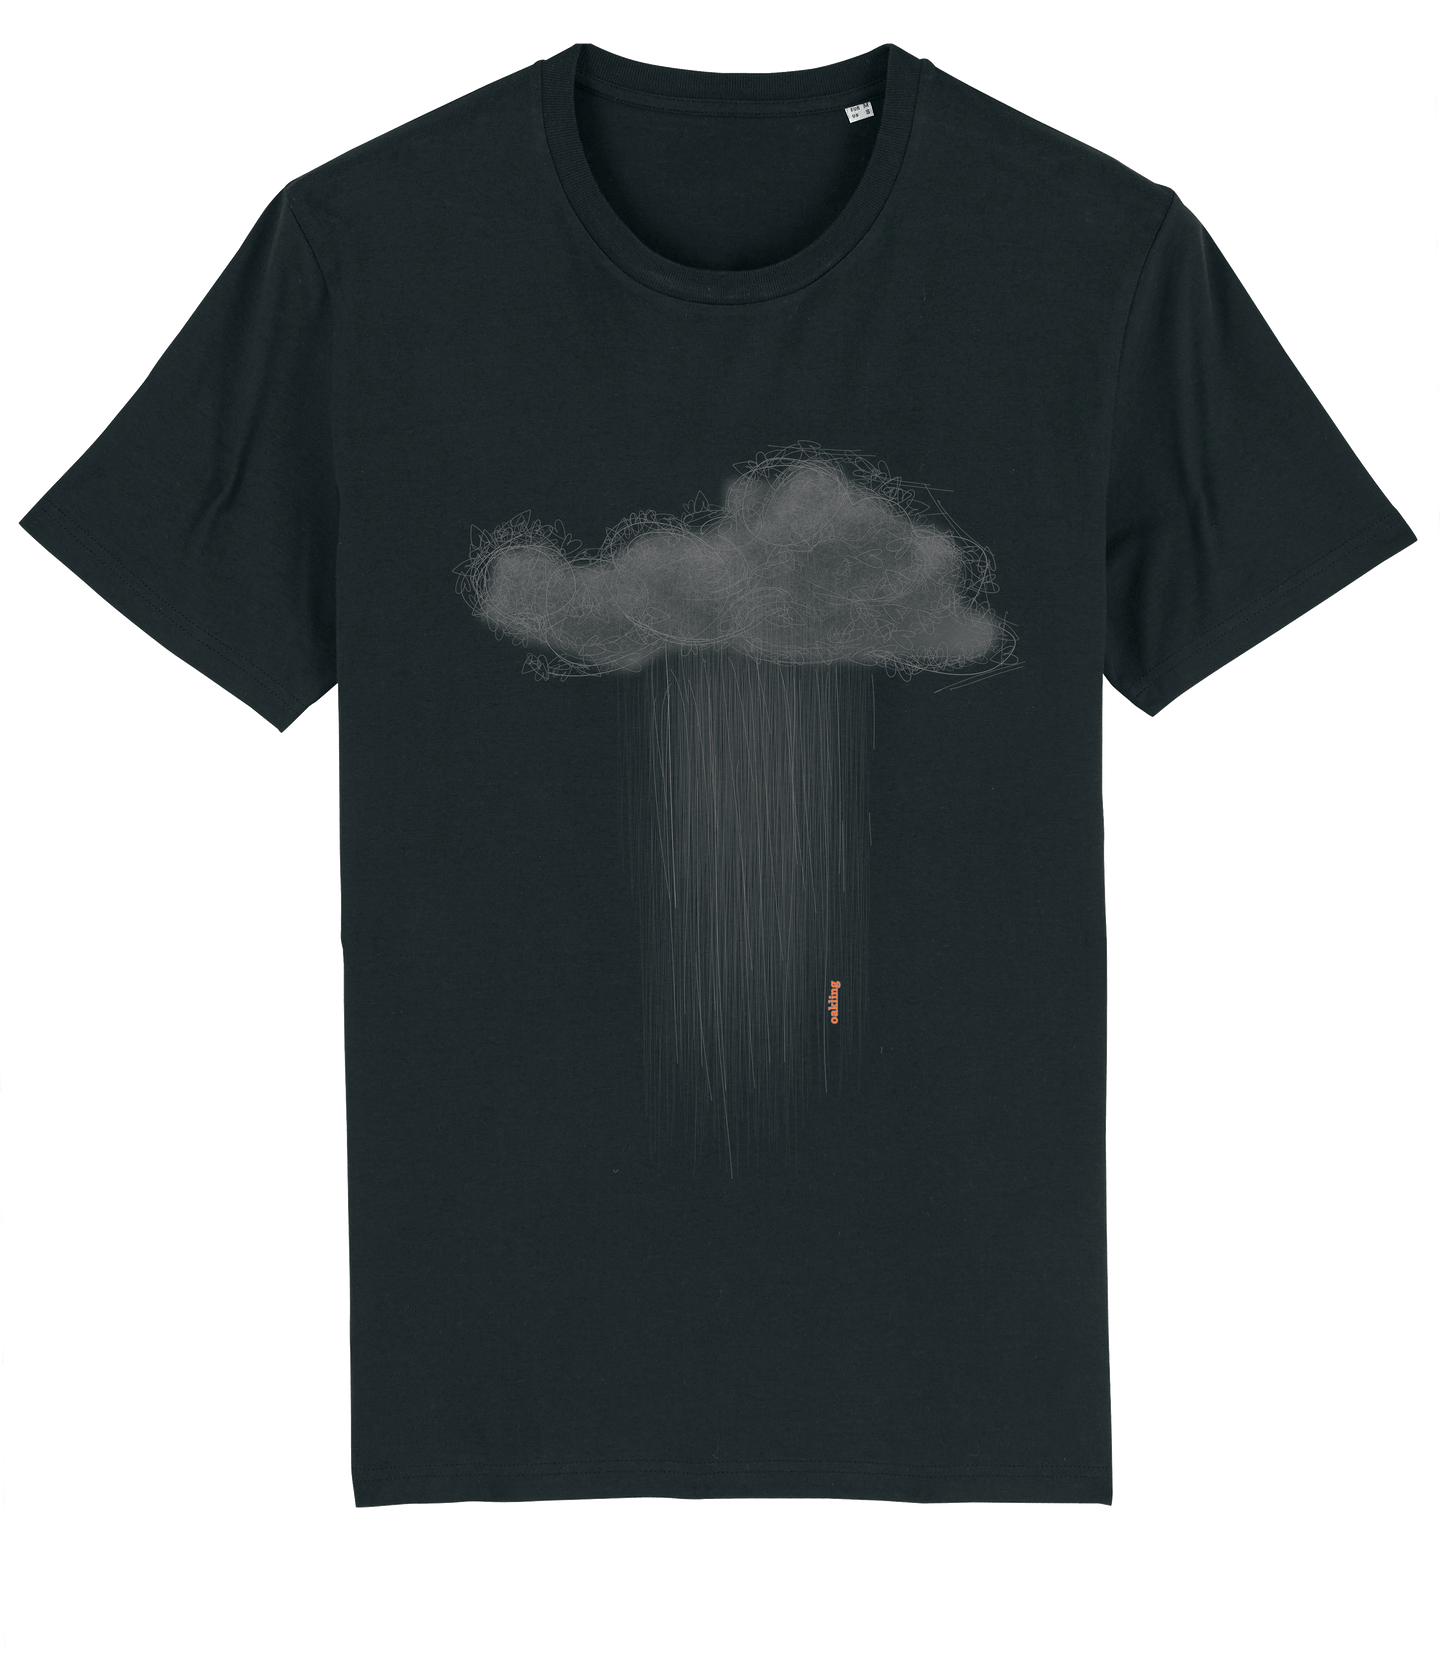 Organic Shirt - The Black Cloud